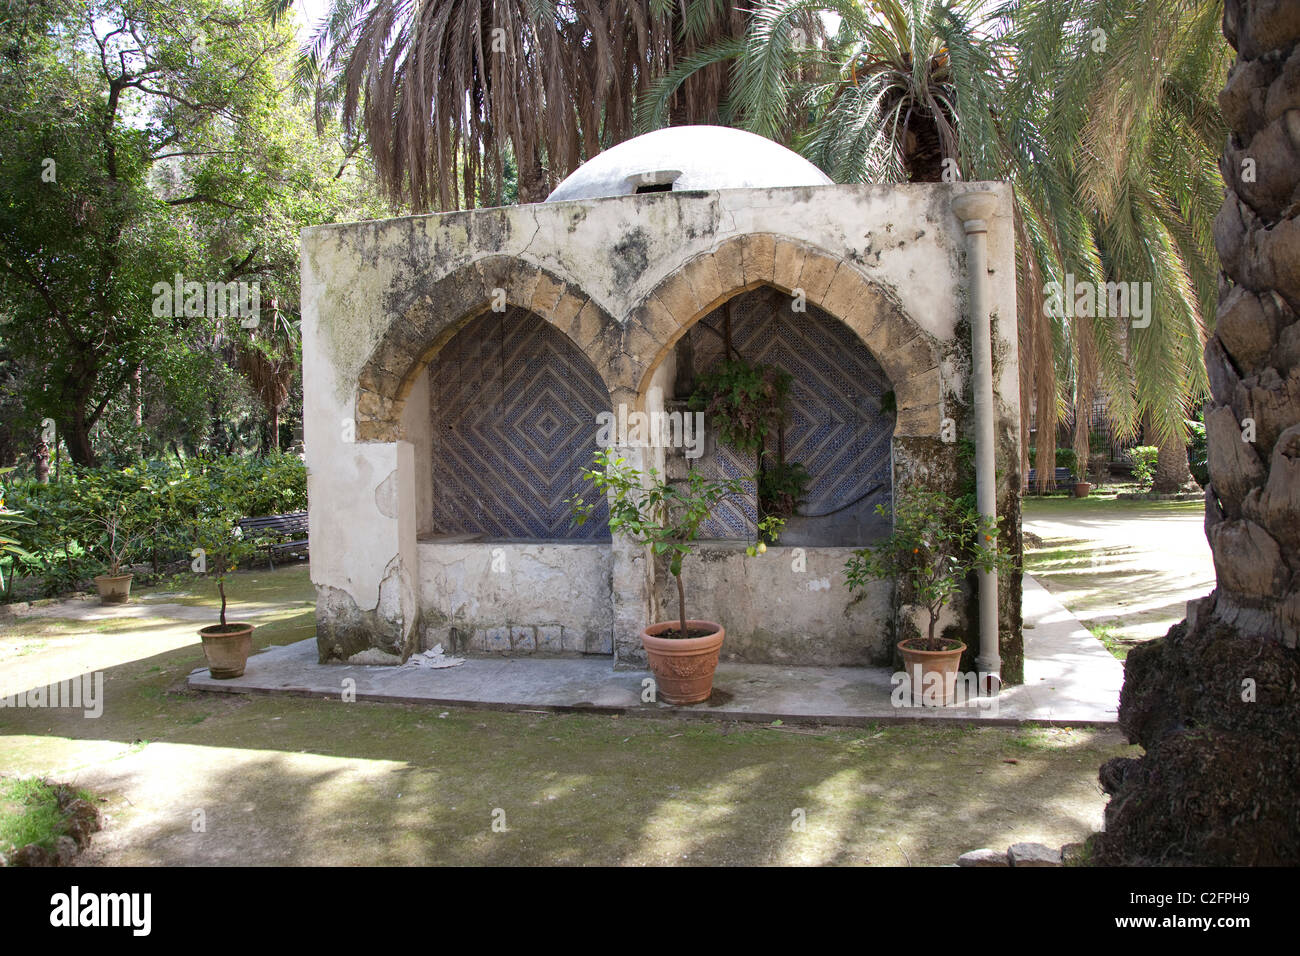 Eine arabische Torheit Gebäude in den Botanischen Garten Palermo Sizilien Italien Stockfoto